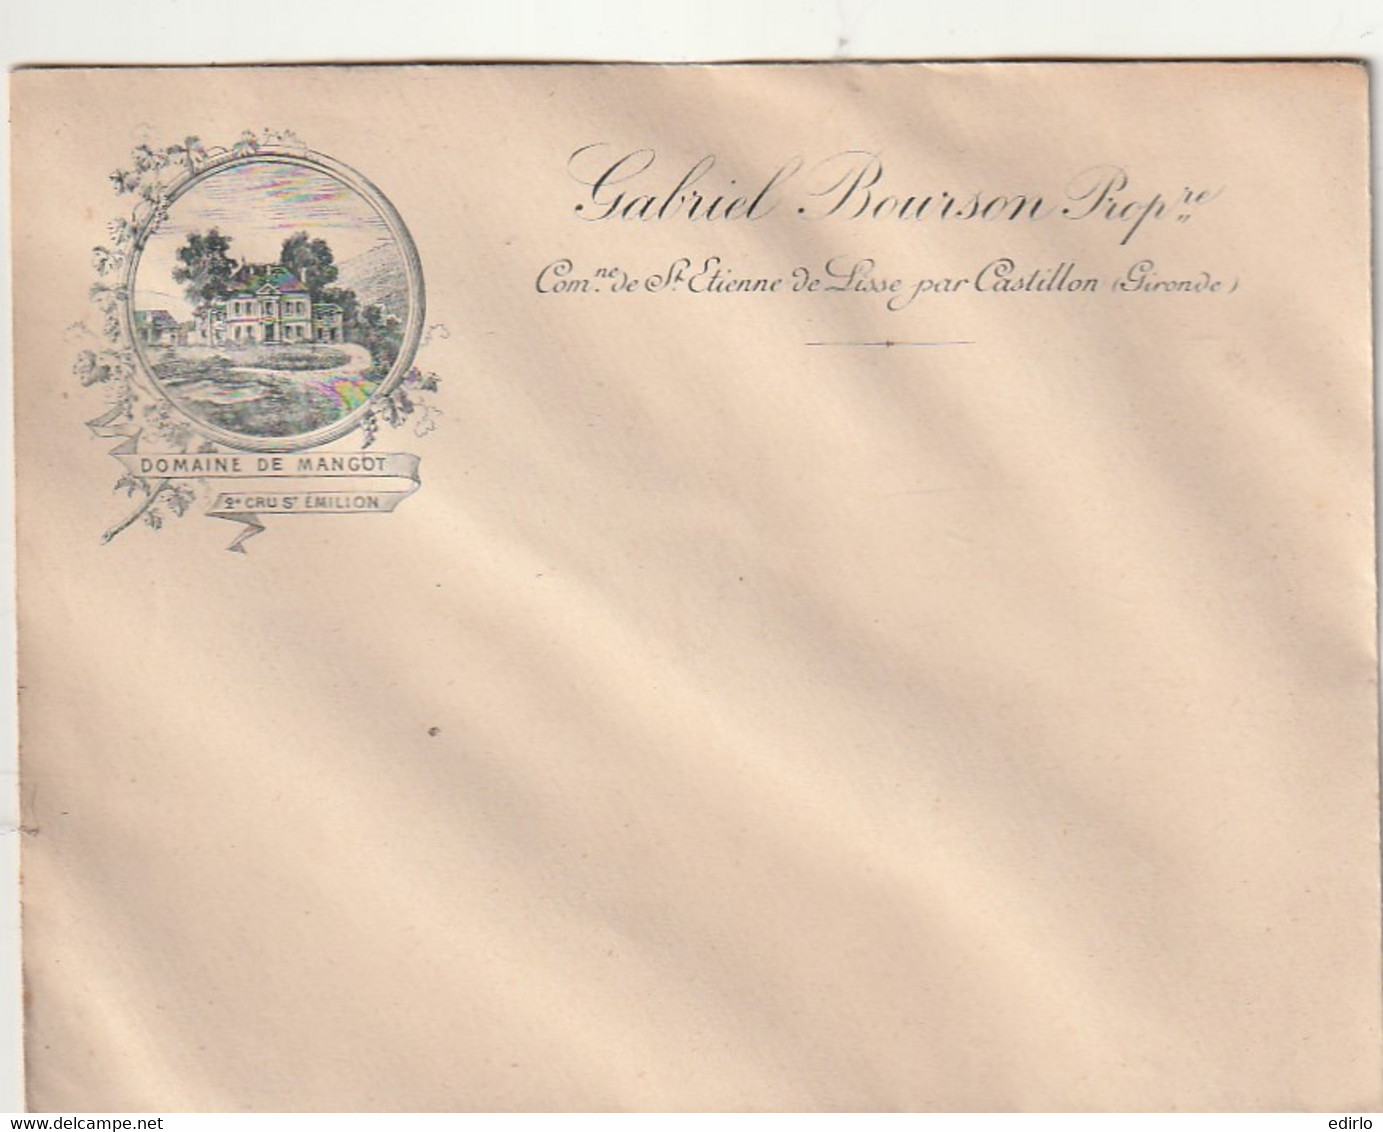 ***  Enveloppe Illustrée Gabriel Bourson DOMAINE DE MANGOT Cru St Emilion - 1900 – 1949